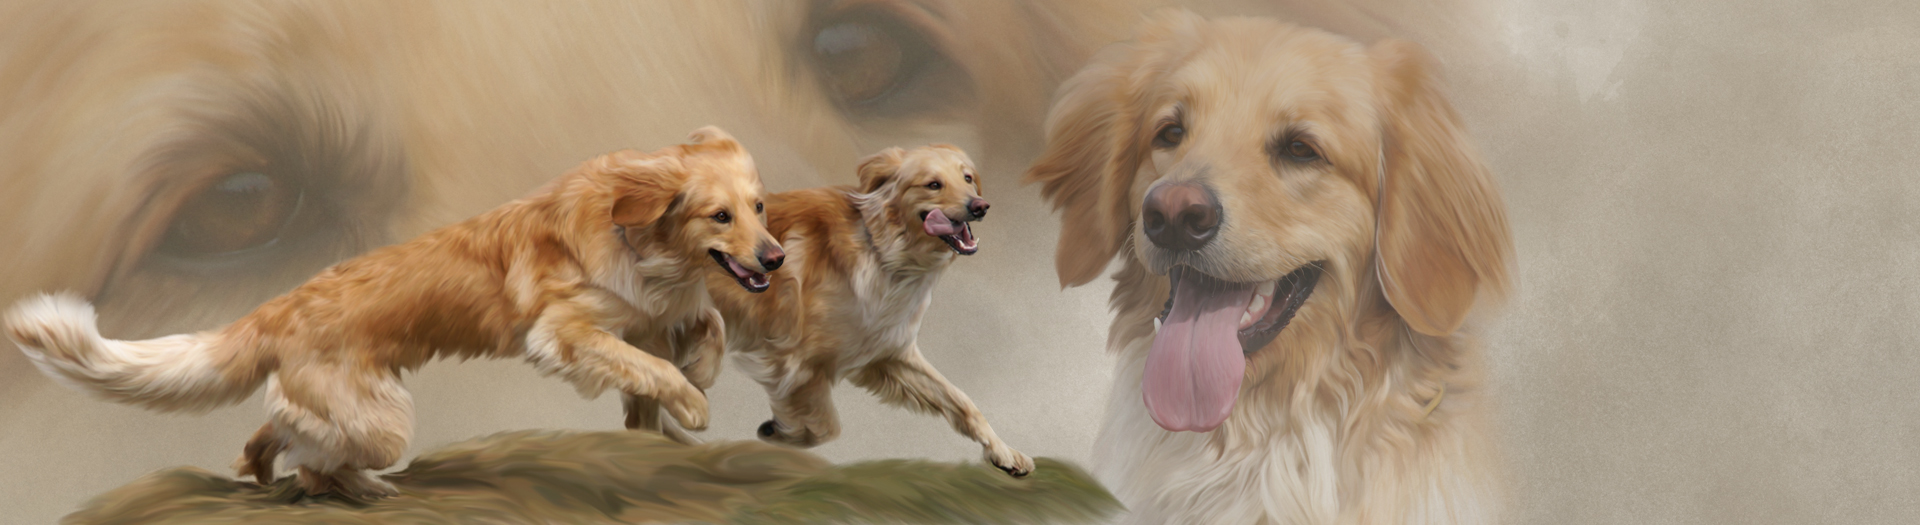 Hunde-Collage durch Foto-Collage mit Hunden